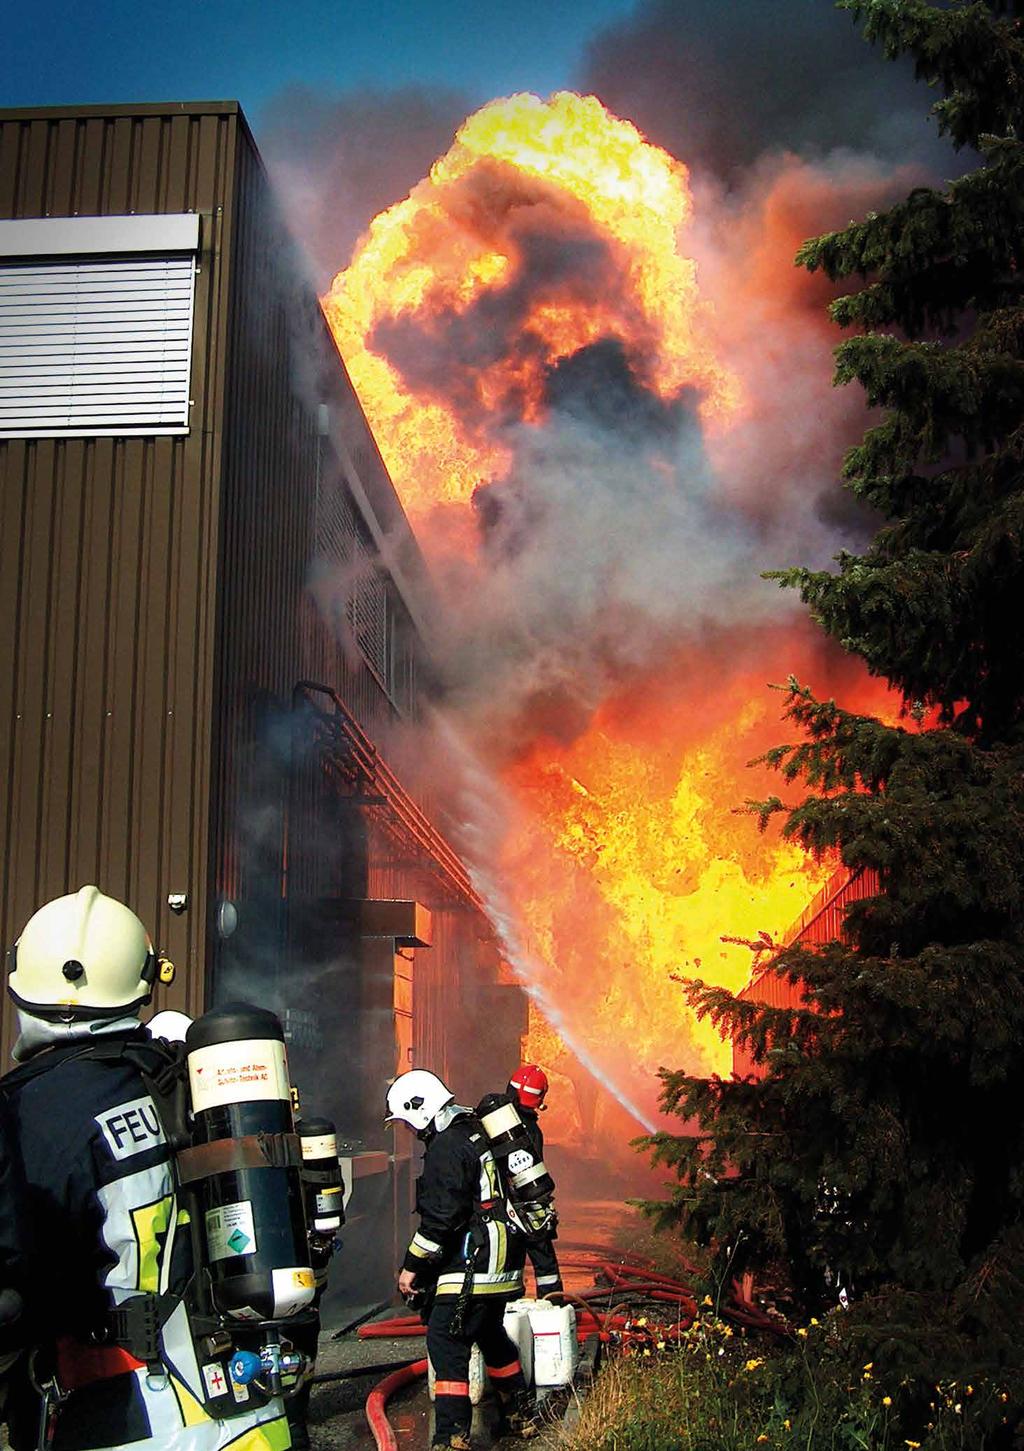 46 Feuer Das Entsetzen ist groß, die Gefahr auch. Feuer, das außer Kontrolle gerät, ist immer eine Katastrophe.